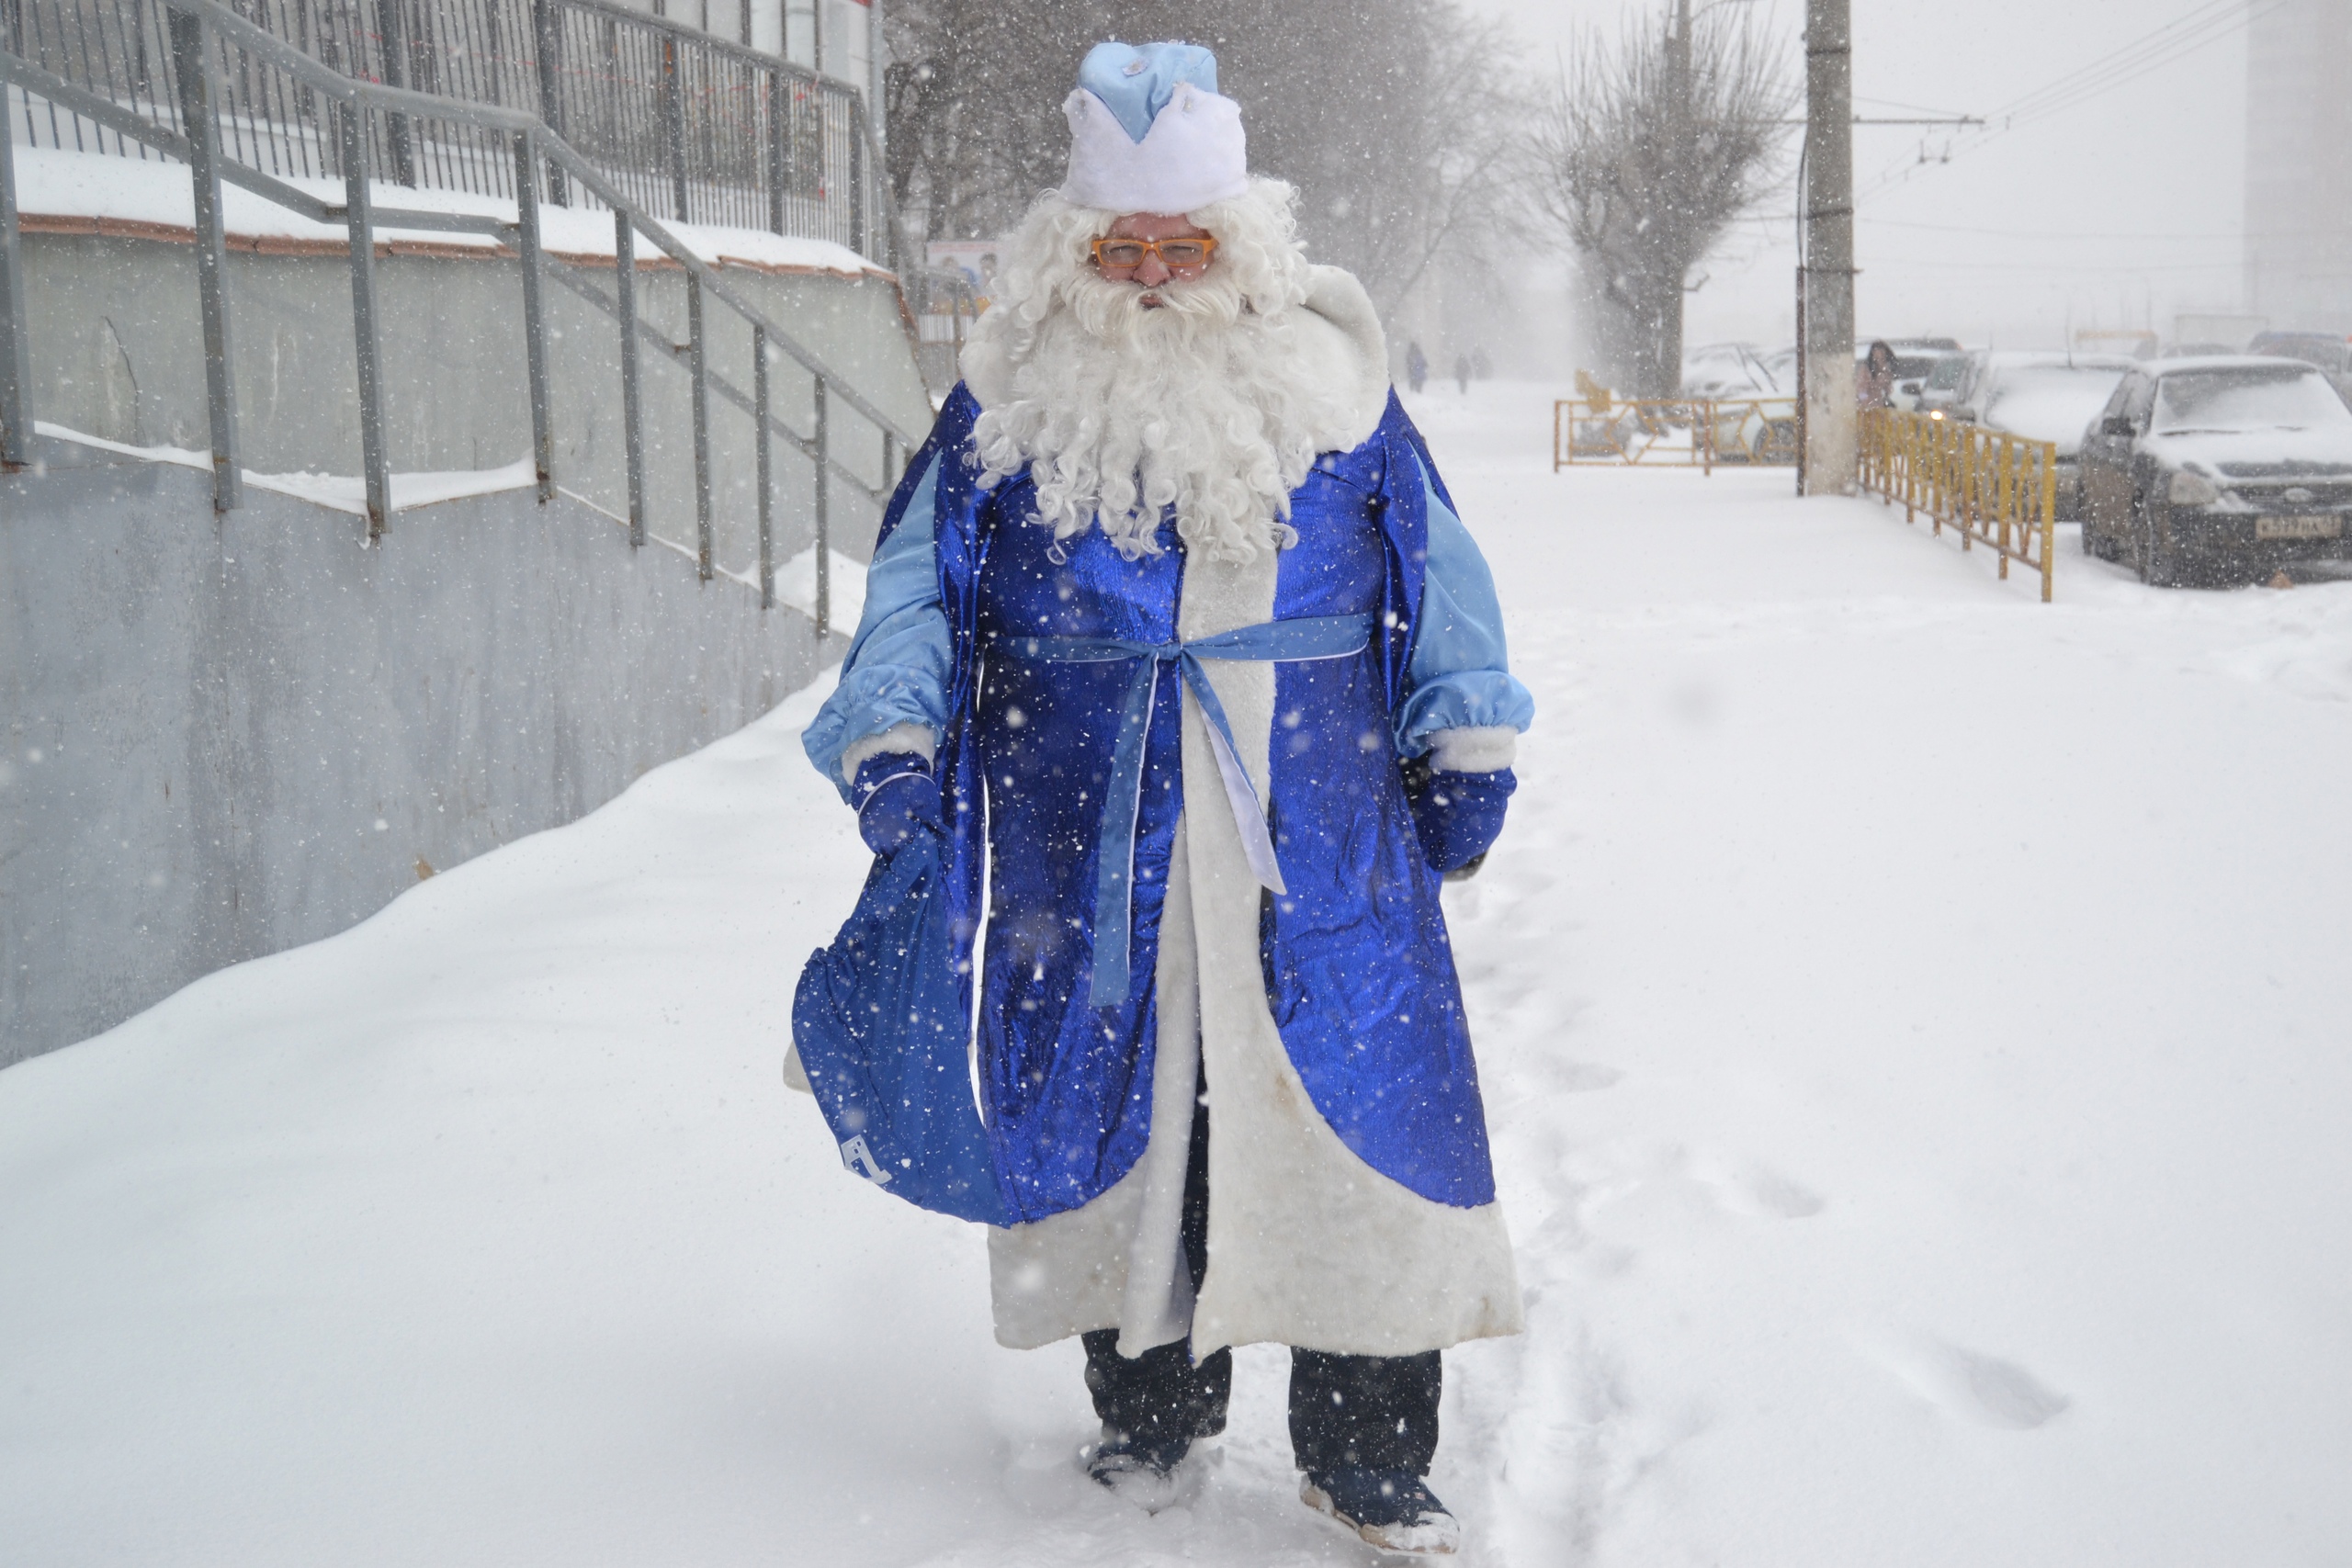 172 000 писем Деду Морозу доставили Почтой России в Великий Устюг